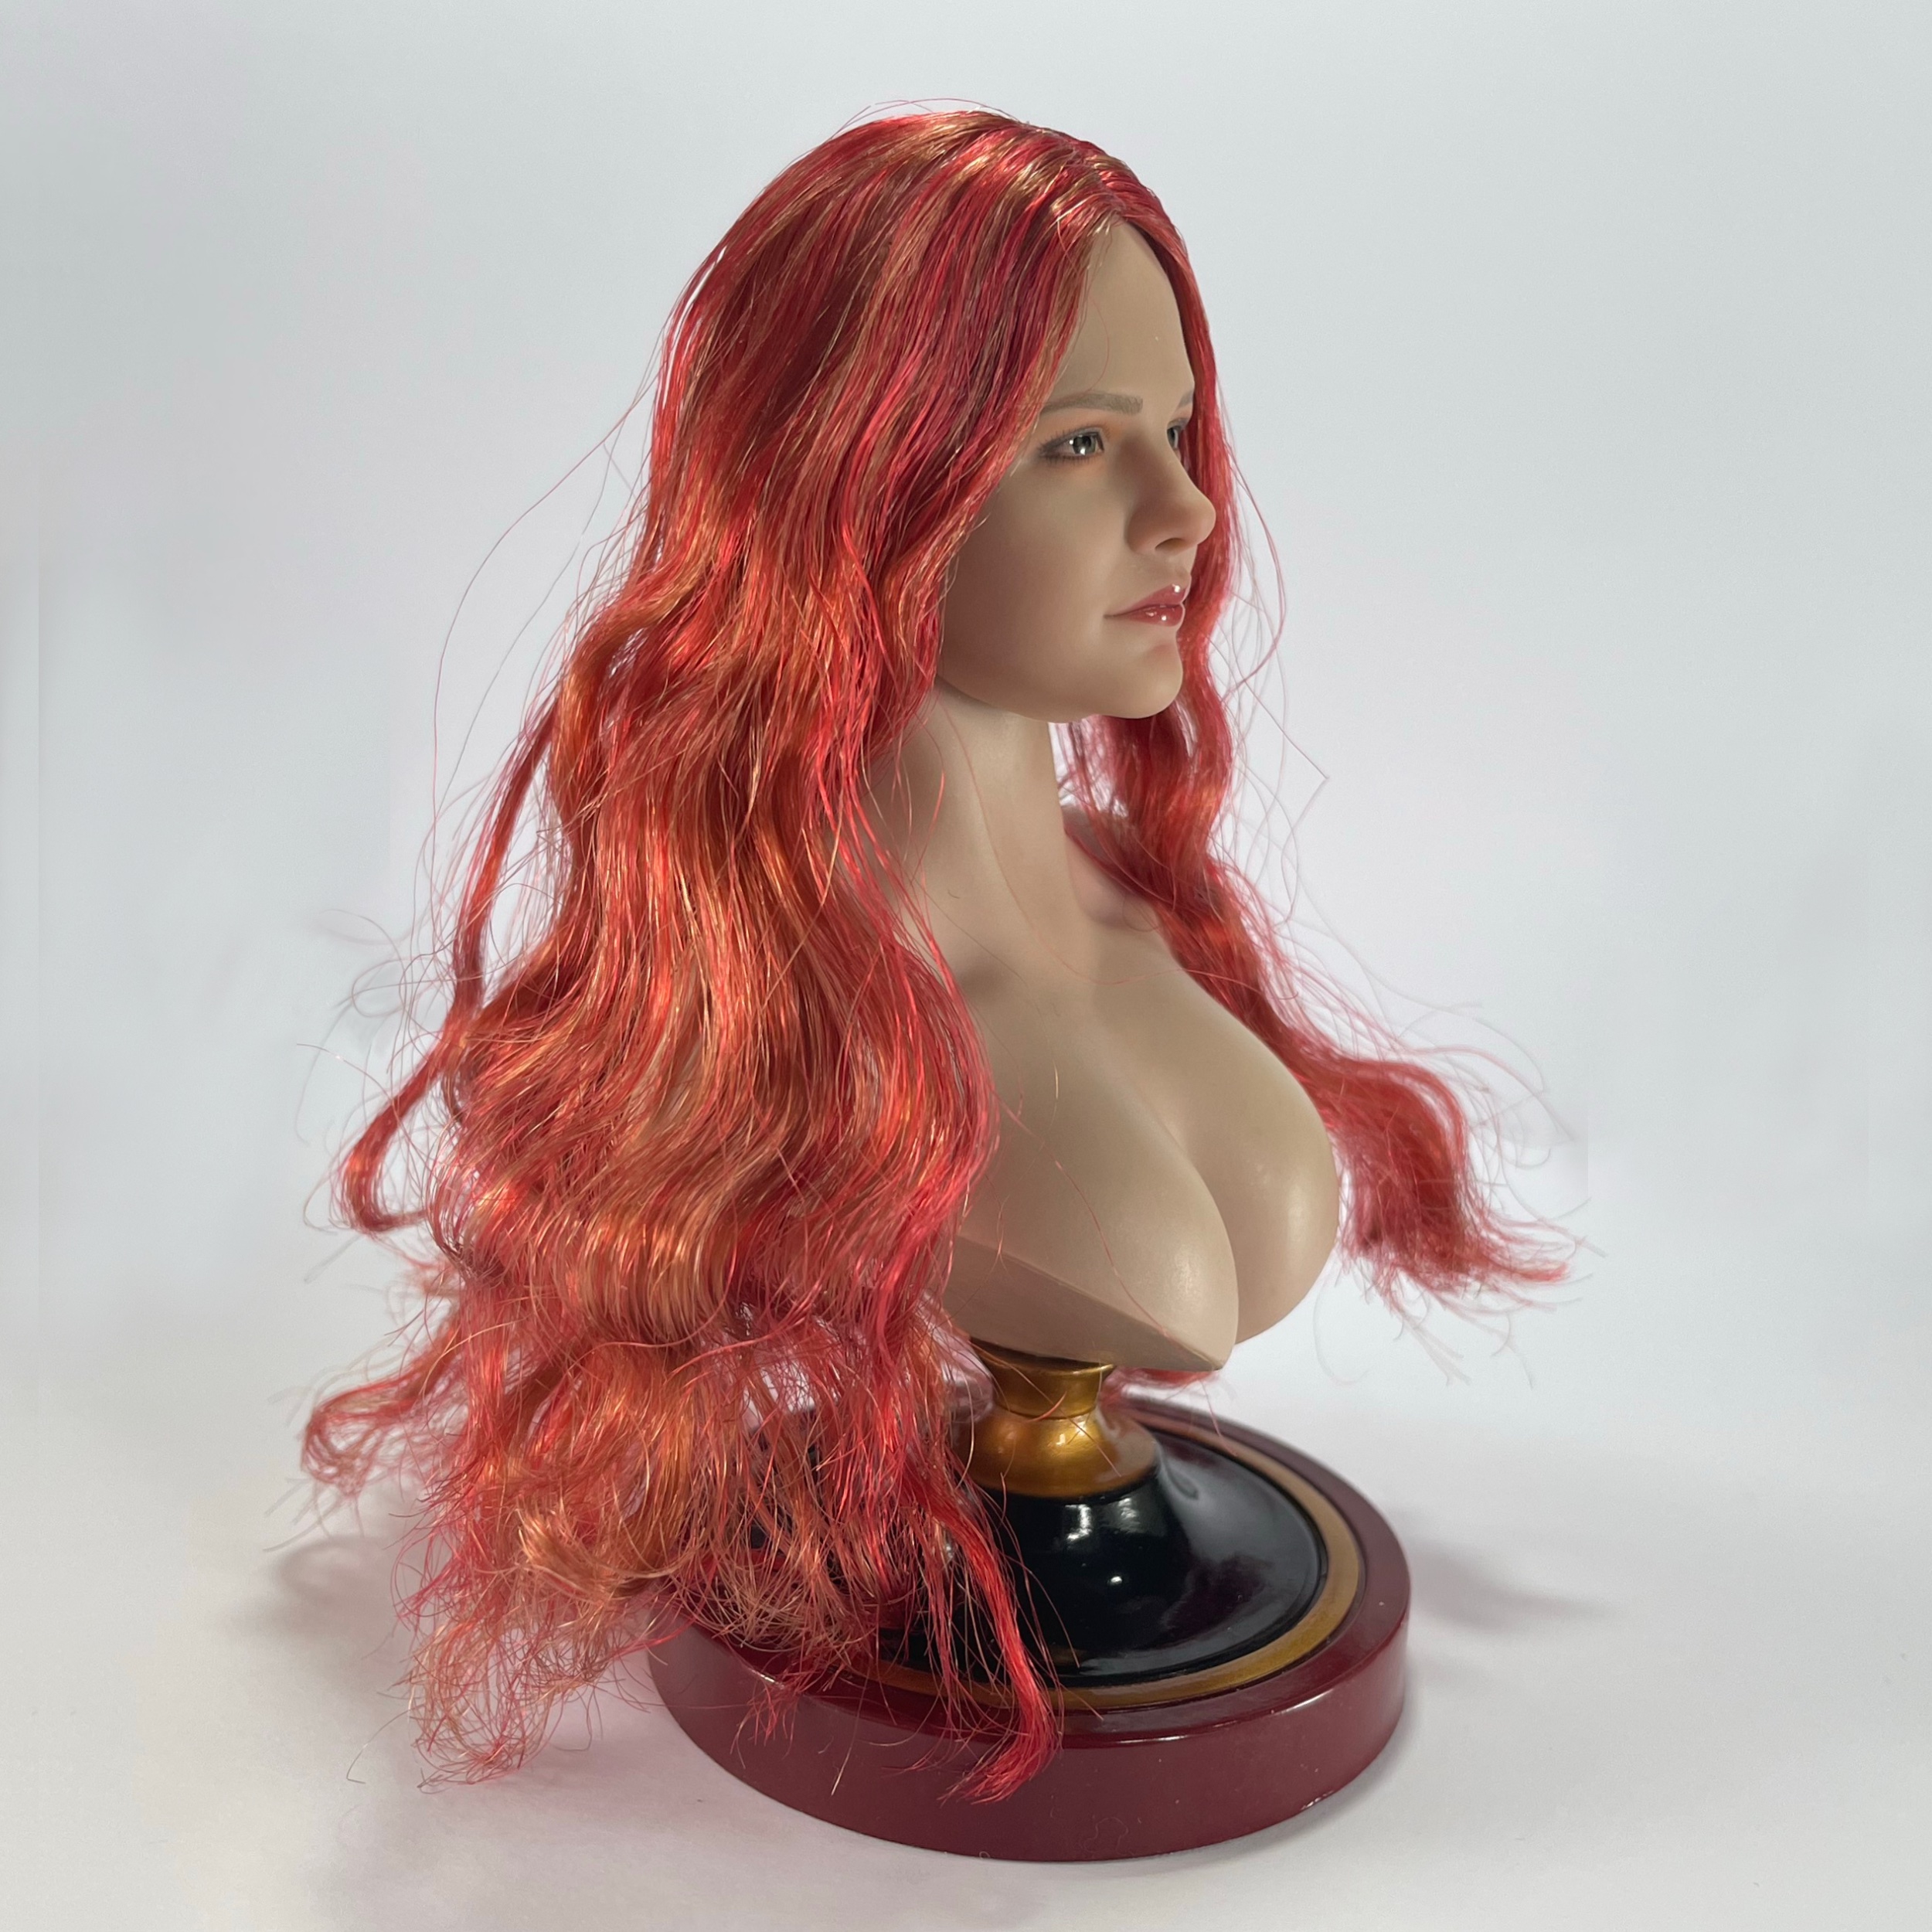 NEW PRODUCT: SUPER DUCK SDH036 1/6 Scale Female head sculpt in 4 styles 52860114403_56650c0e42_o